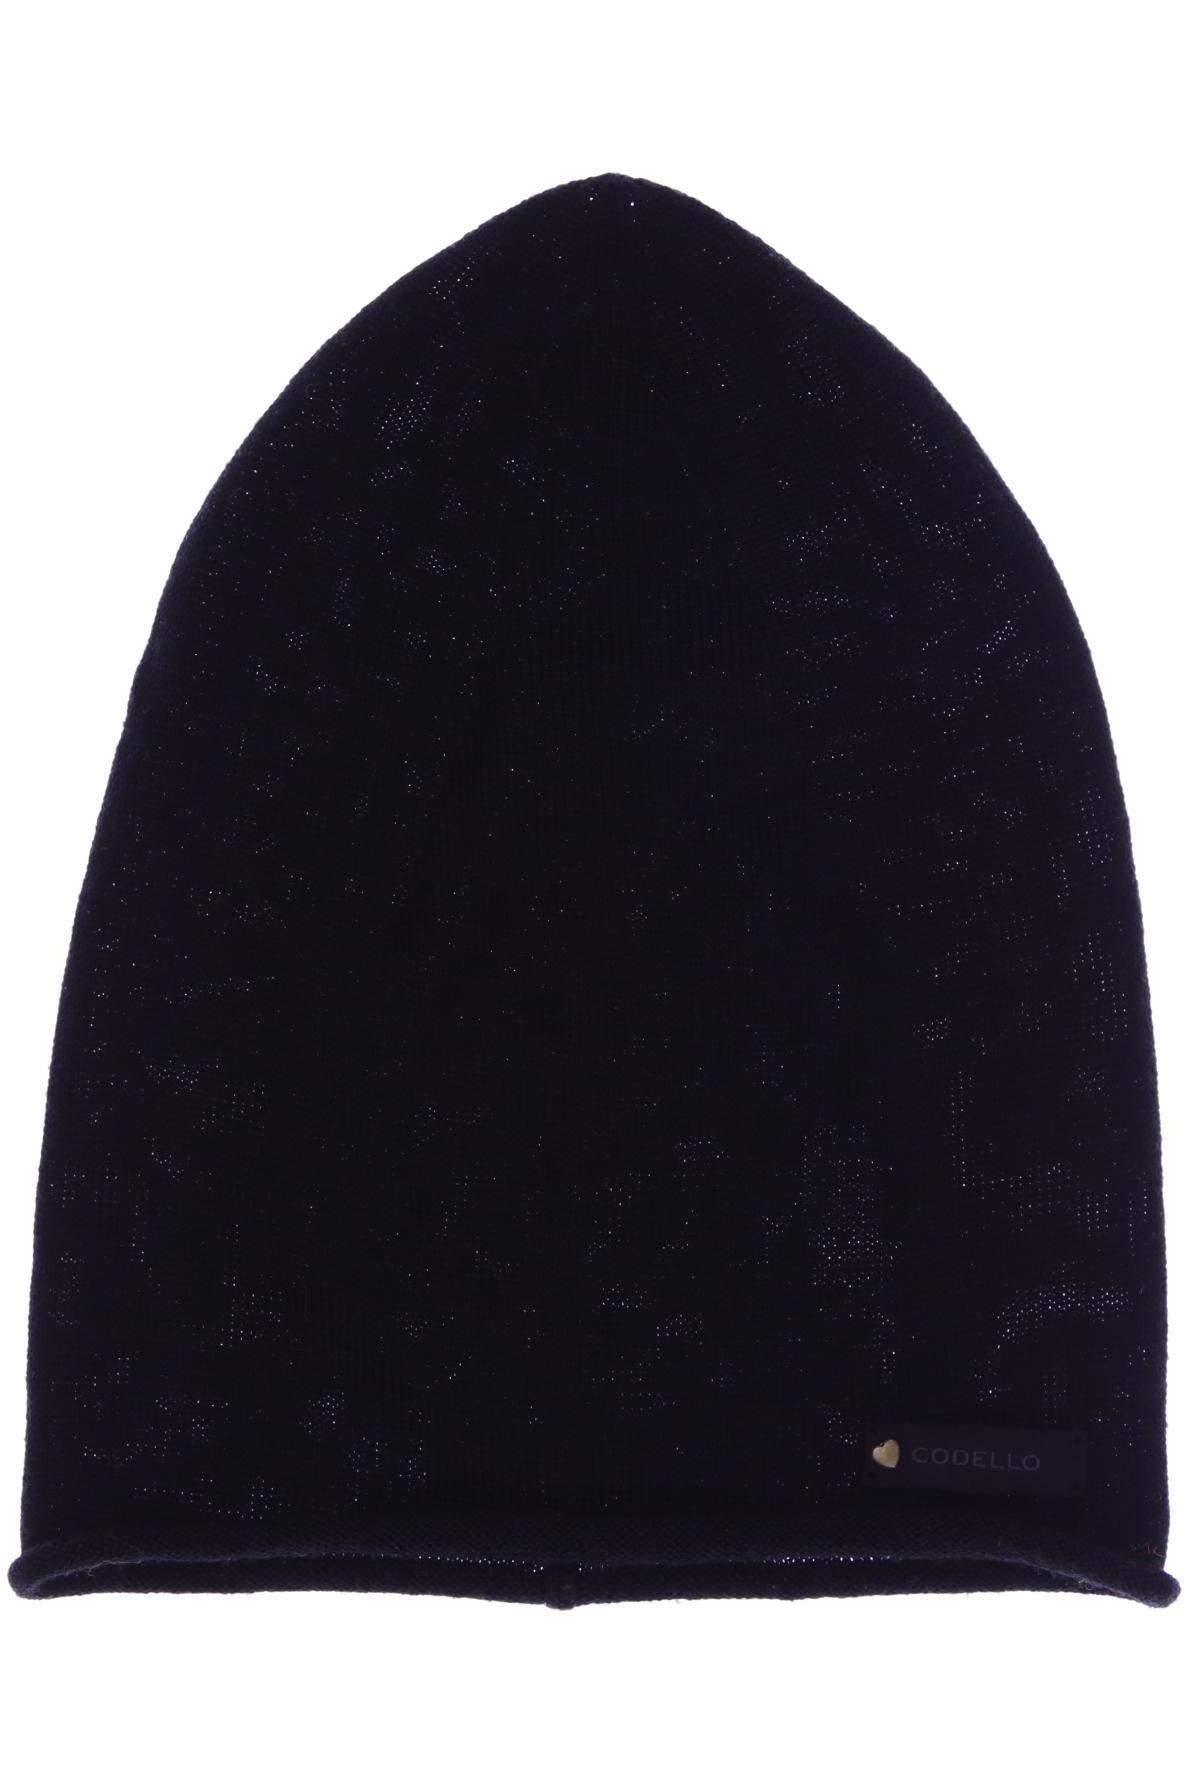 Codello Damen Hut/Mütze, schwarz von Codello